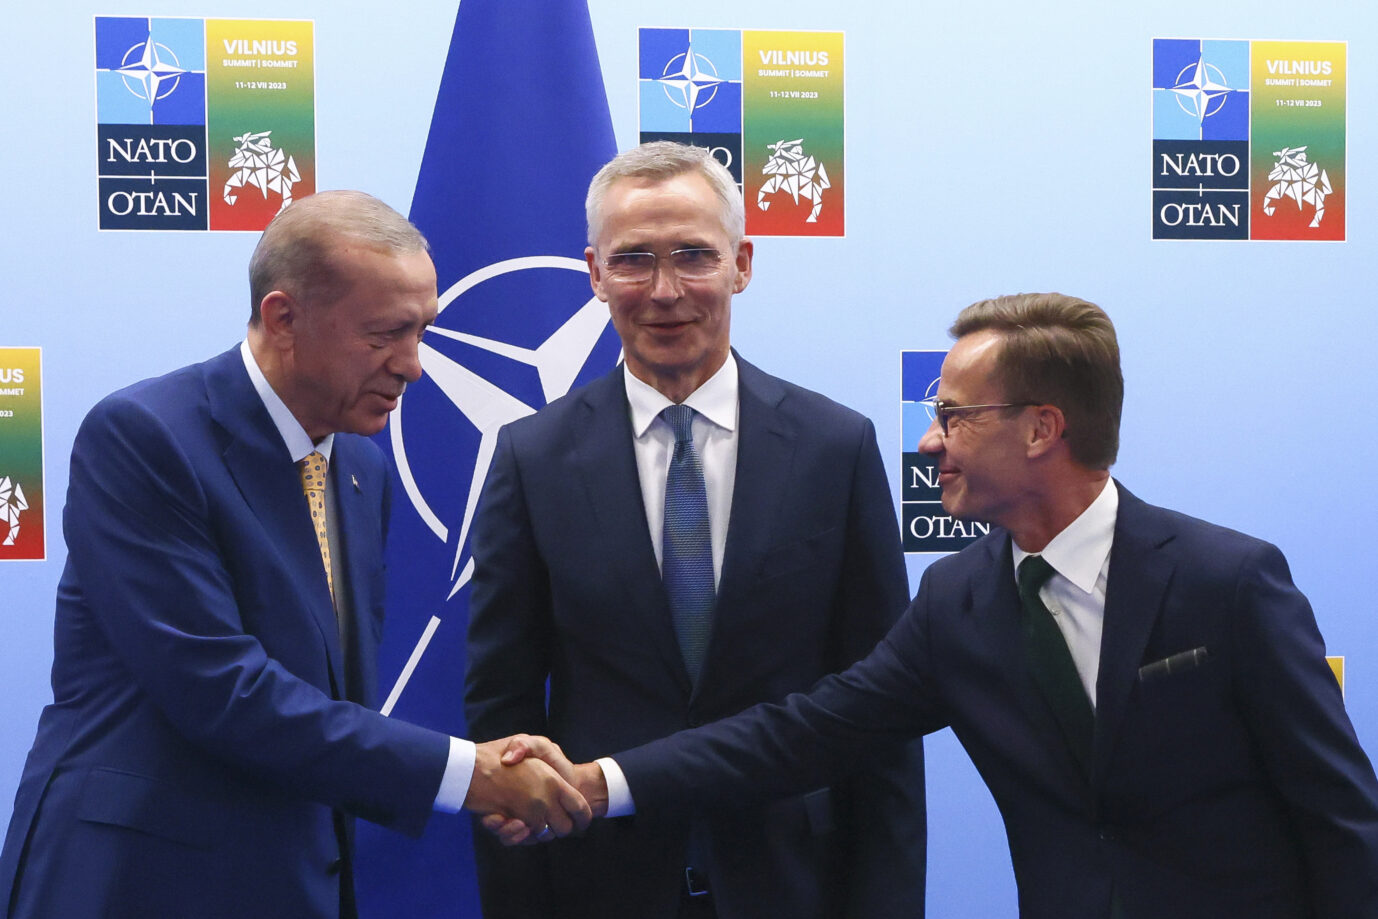 Auf dem Foto befinden sich der türkische Präsident Erdogan, der NATO-Generalsekretär Stoltenberg und der schwedische Ministerpräsident Kristersson. (Themenbild)